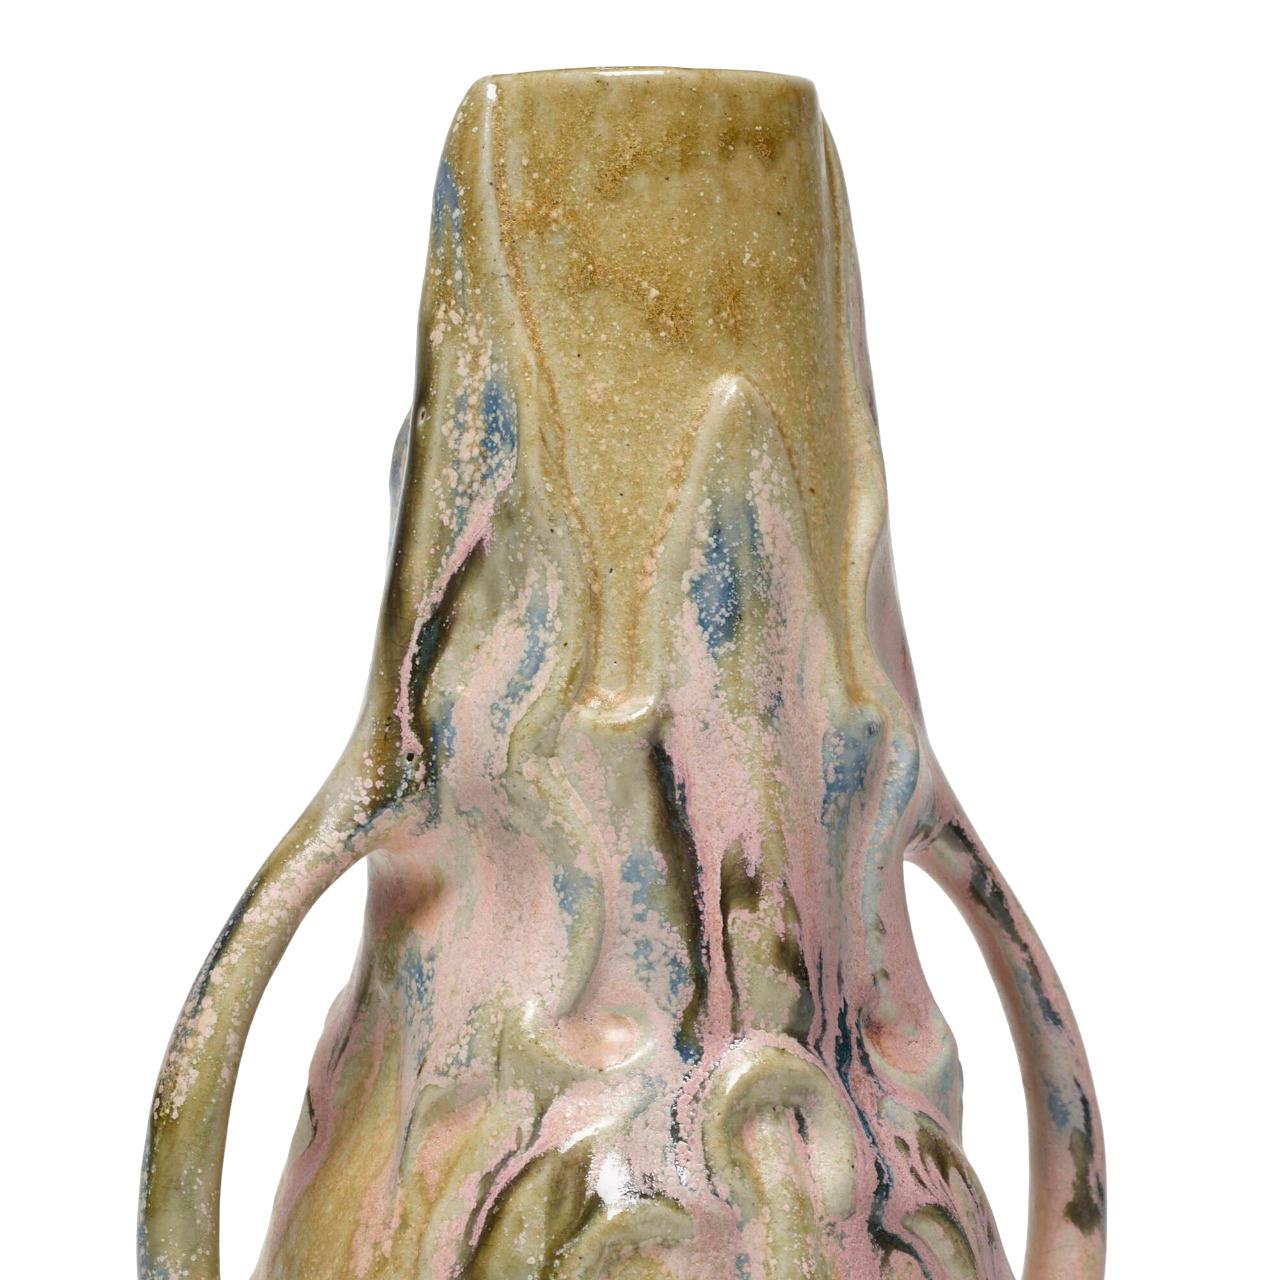 Célèbre céramiste, Charles Gréber (1853-1935) a marqué durablement la céramique beauvaisienne en développant l'entreprise familiale créée par son père en 1870.
Cet élégant vase à deux anses est le complément idéal de tout décor intérieur. Son